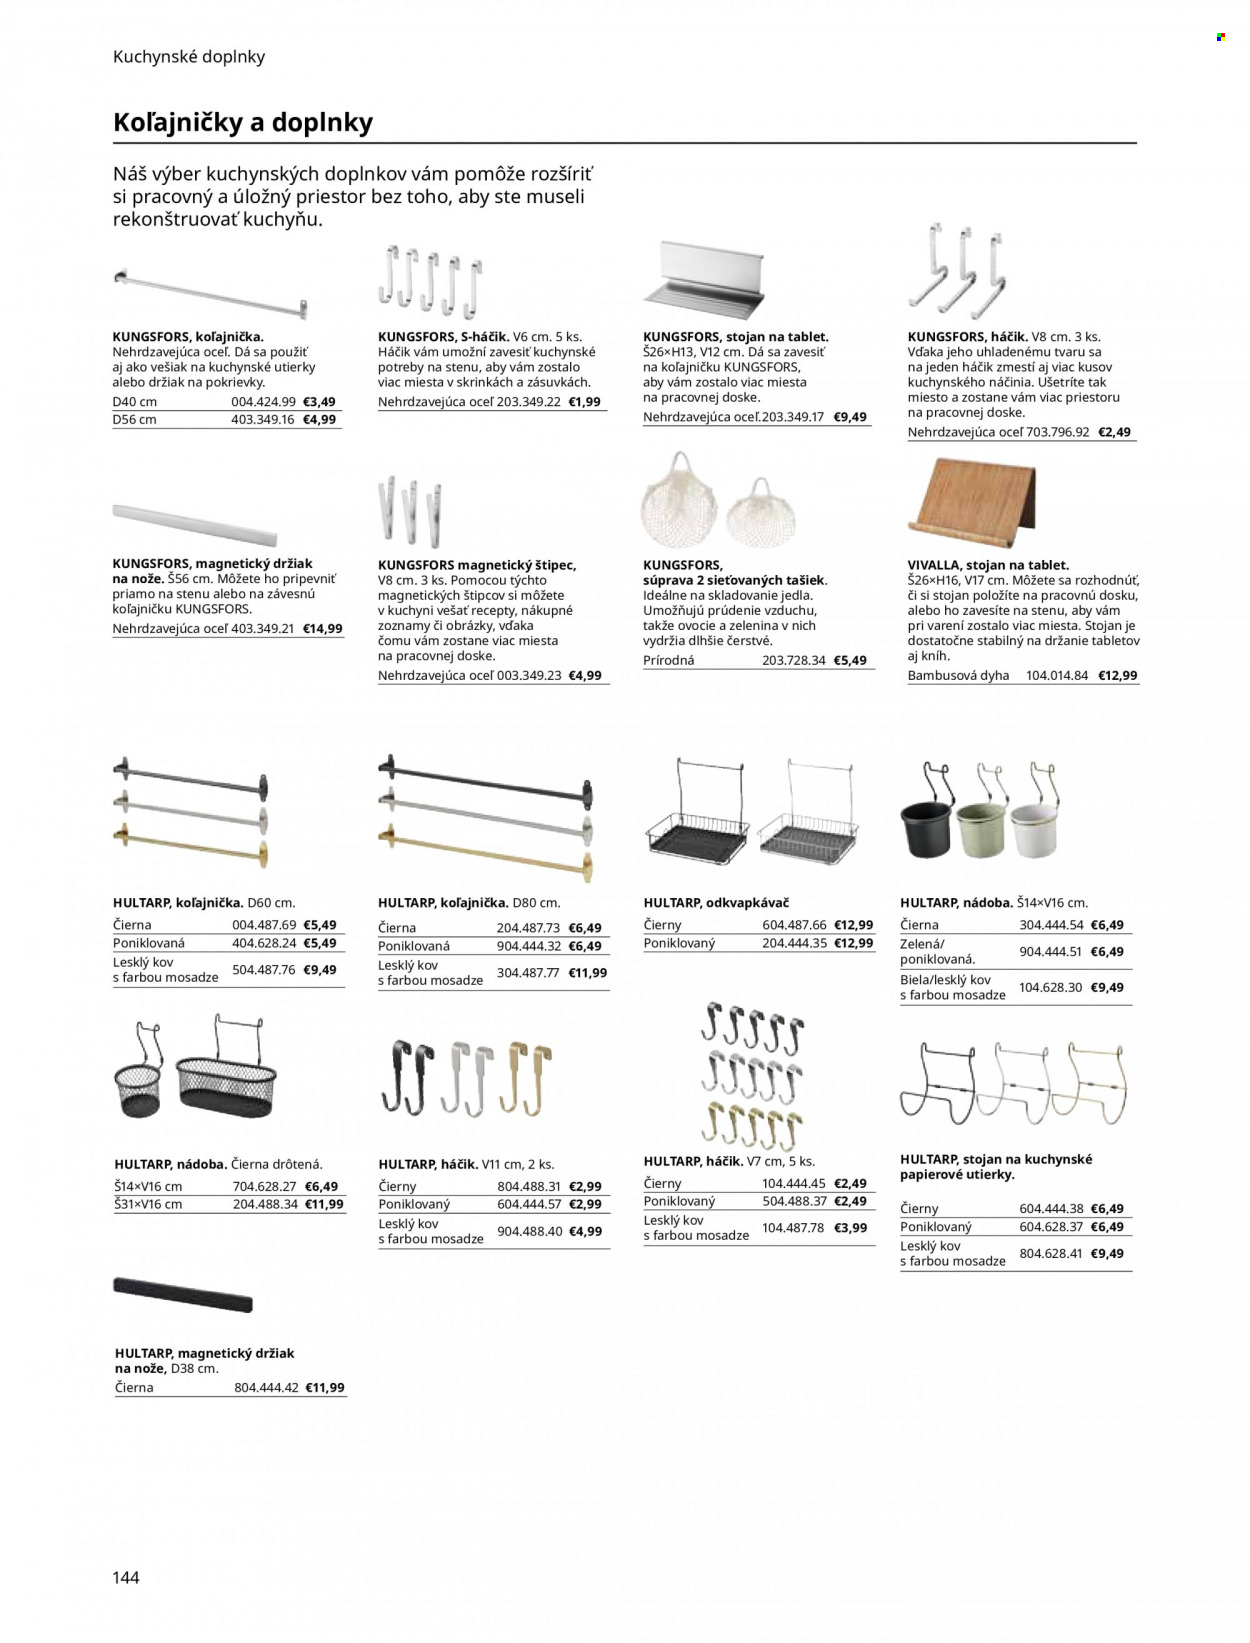 Leták IKEA - Produkty v akcii - odkvapkávač, nádoba, háčik, stojan, štípec, stojan na nože, držiak na pokrievky, vešiak. Strana 144.